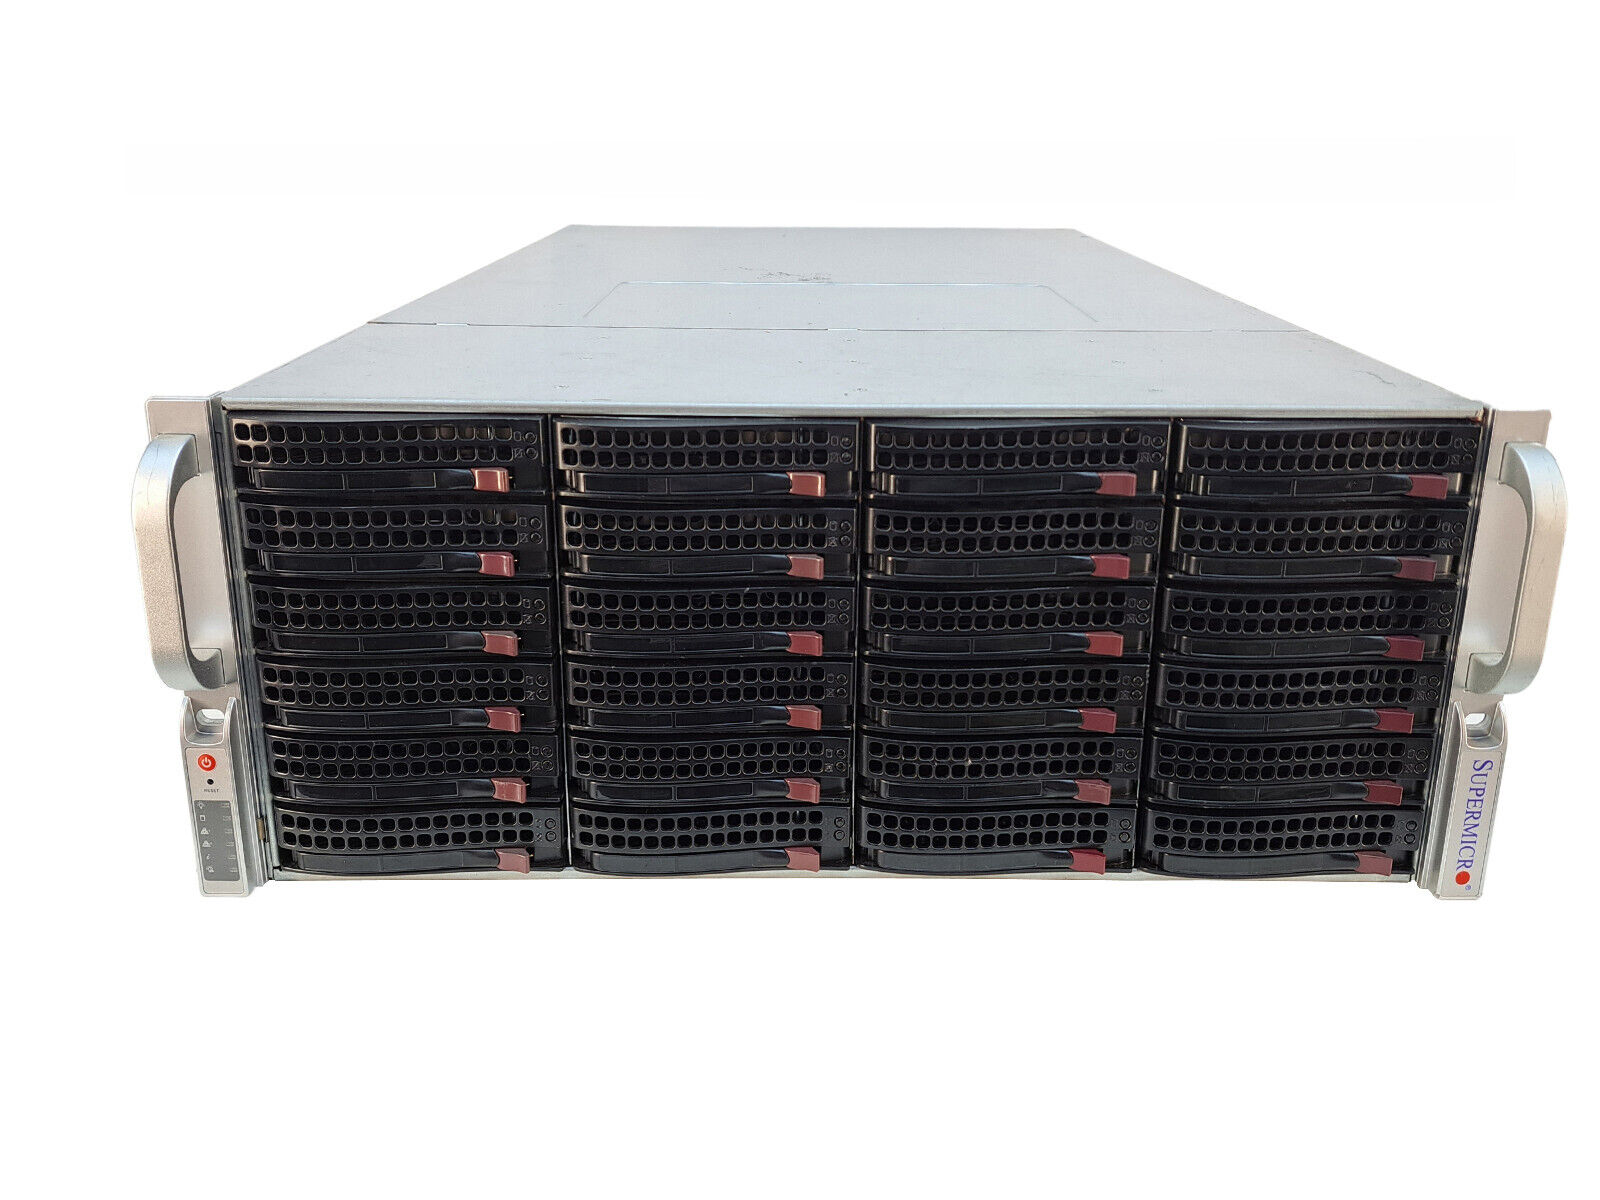 SuperMicro 6047R-E1CR36L 36 Bay LFF 4U Barebone Server w/ X9DRD-EF 2x 1280W PWS